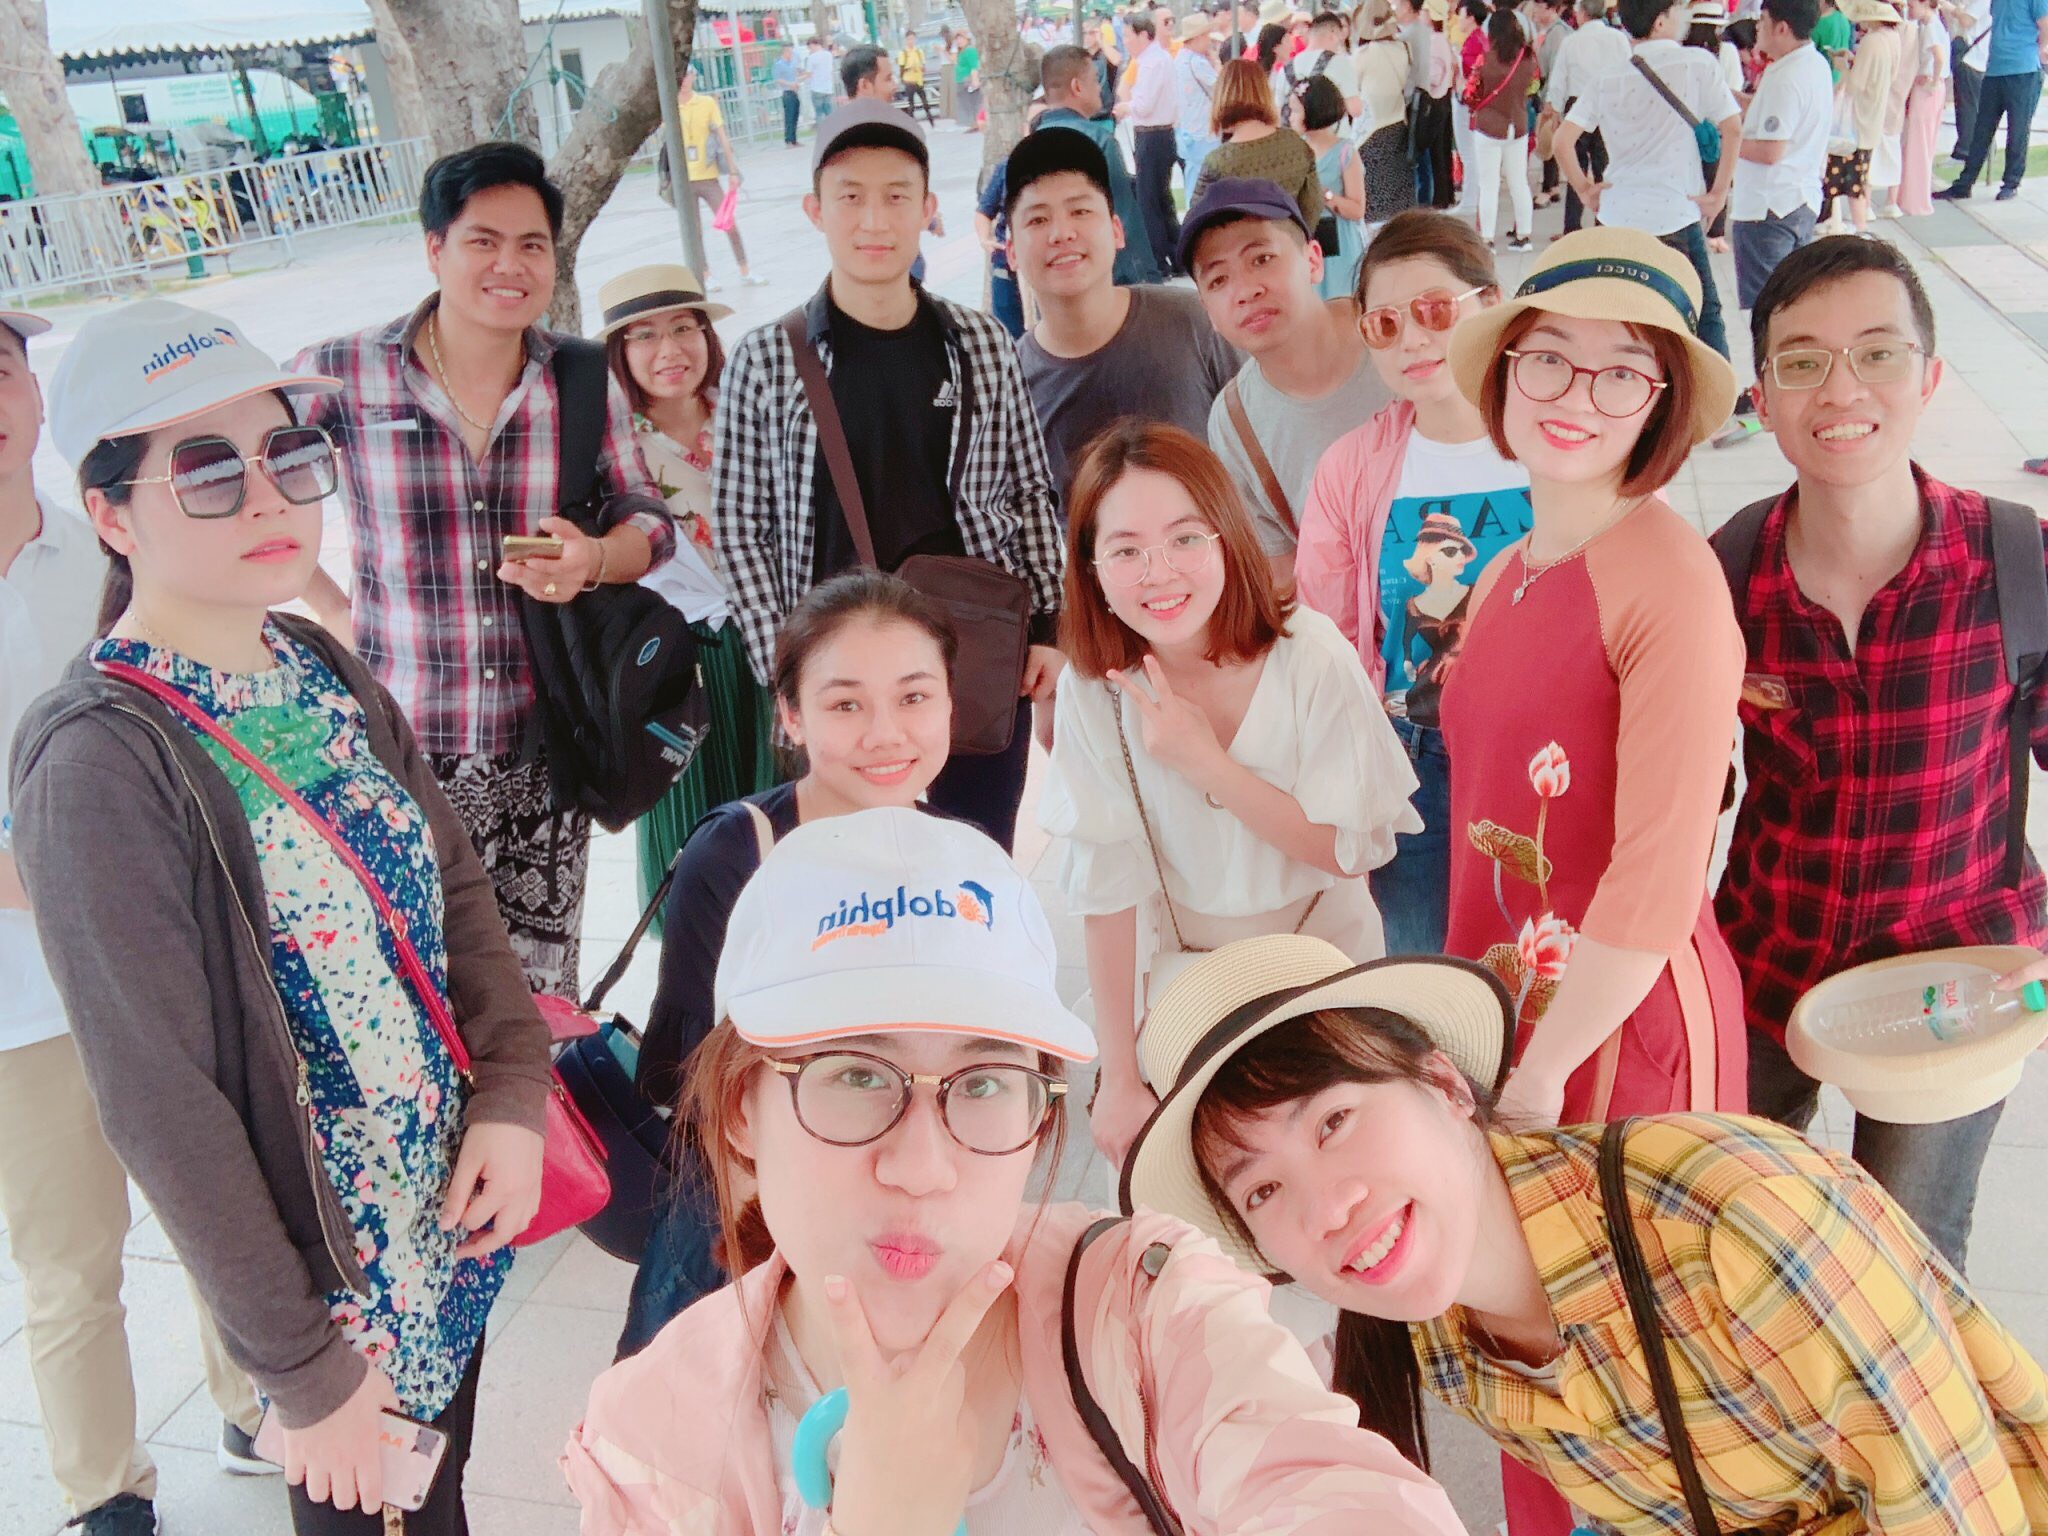 Đoàn du lịch Thái Lan BIDV Cẩm Phả (04-08/04/2019): Bangkok - Pattaya khởi hành từ HN